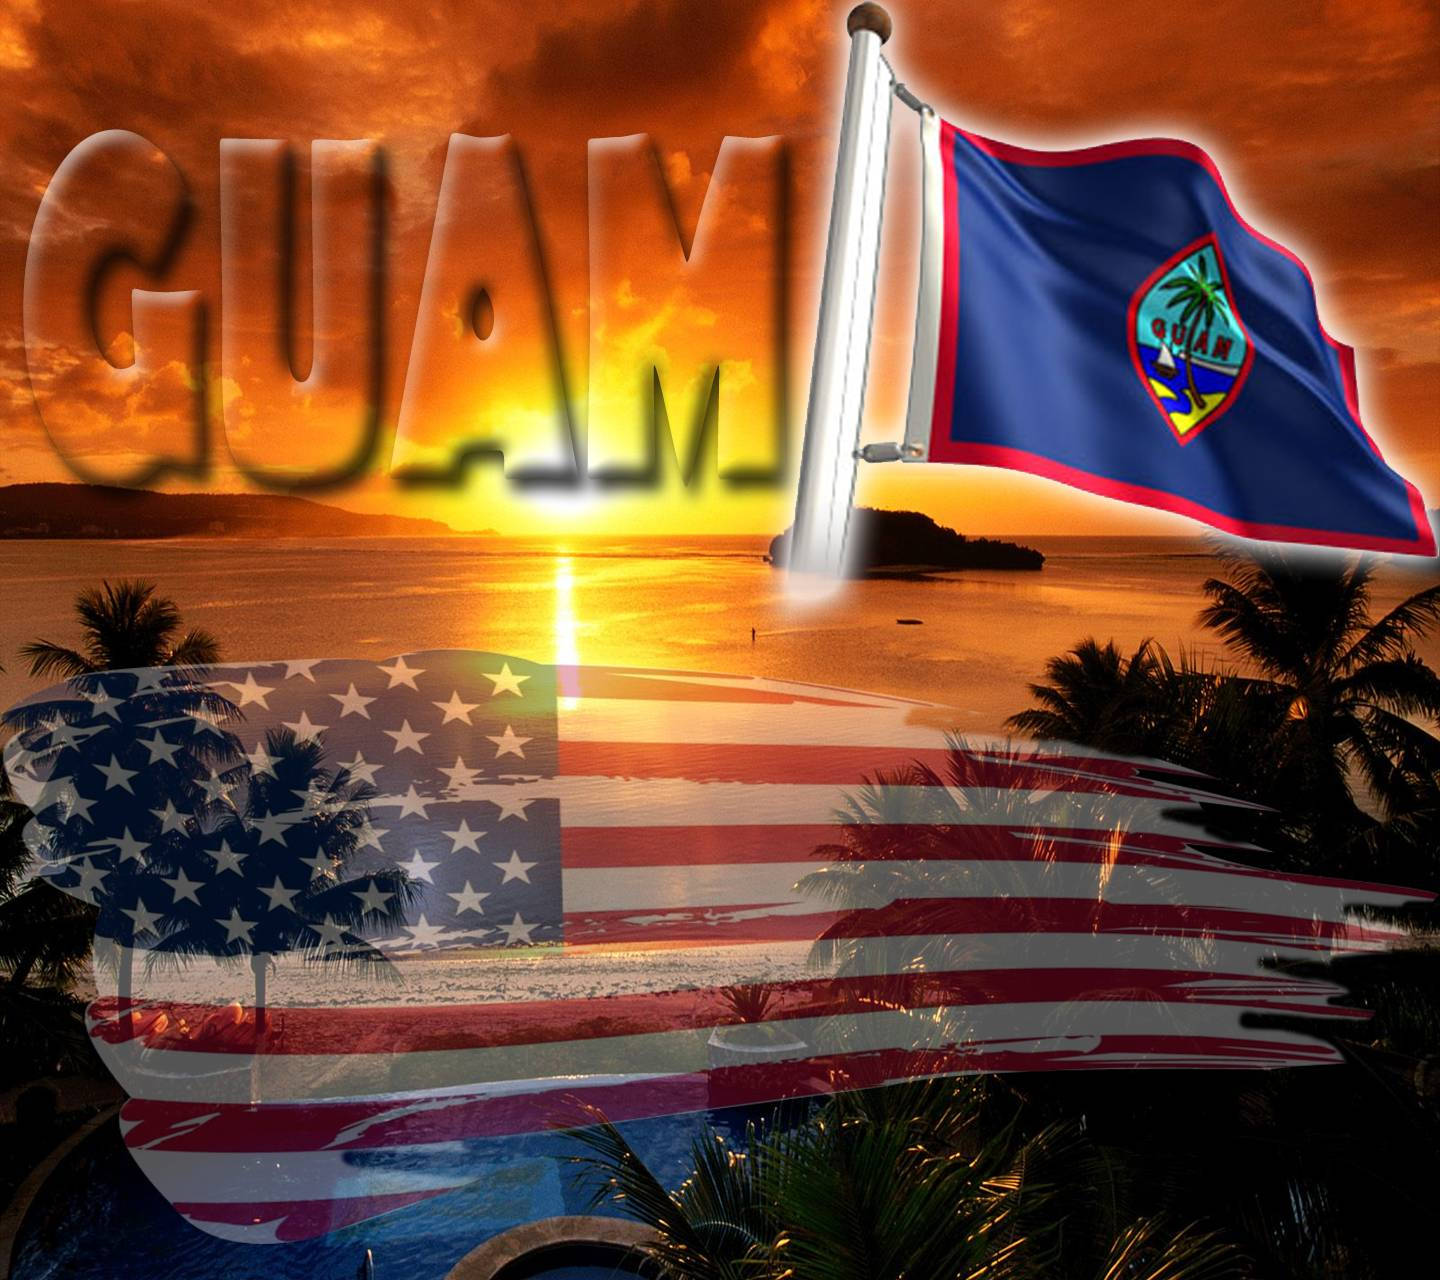 Atardecerbandera De Guam Fondo de pantalla